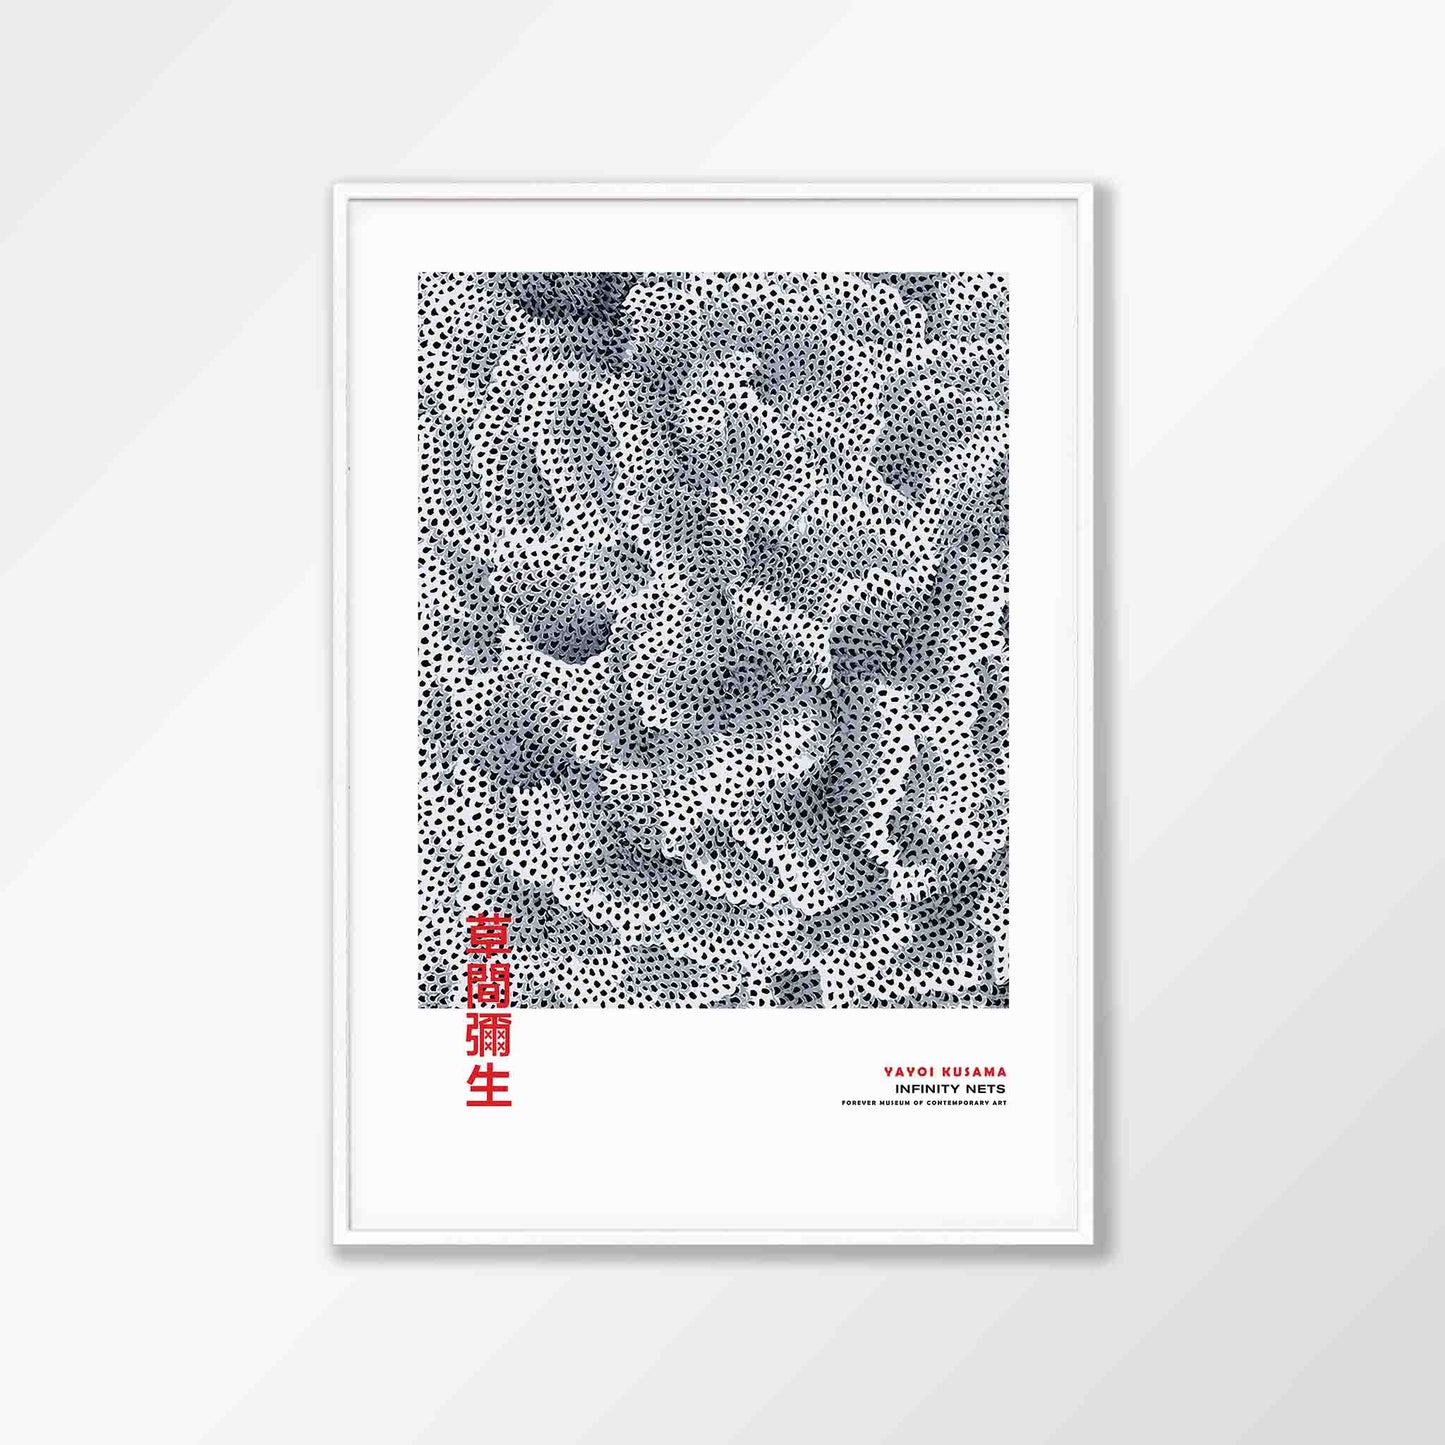 Abstract Infinity Nets by Yayoi Kusama